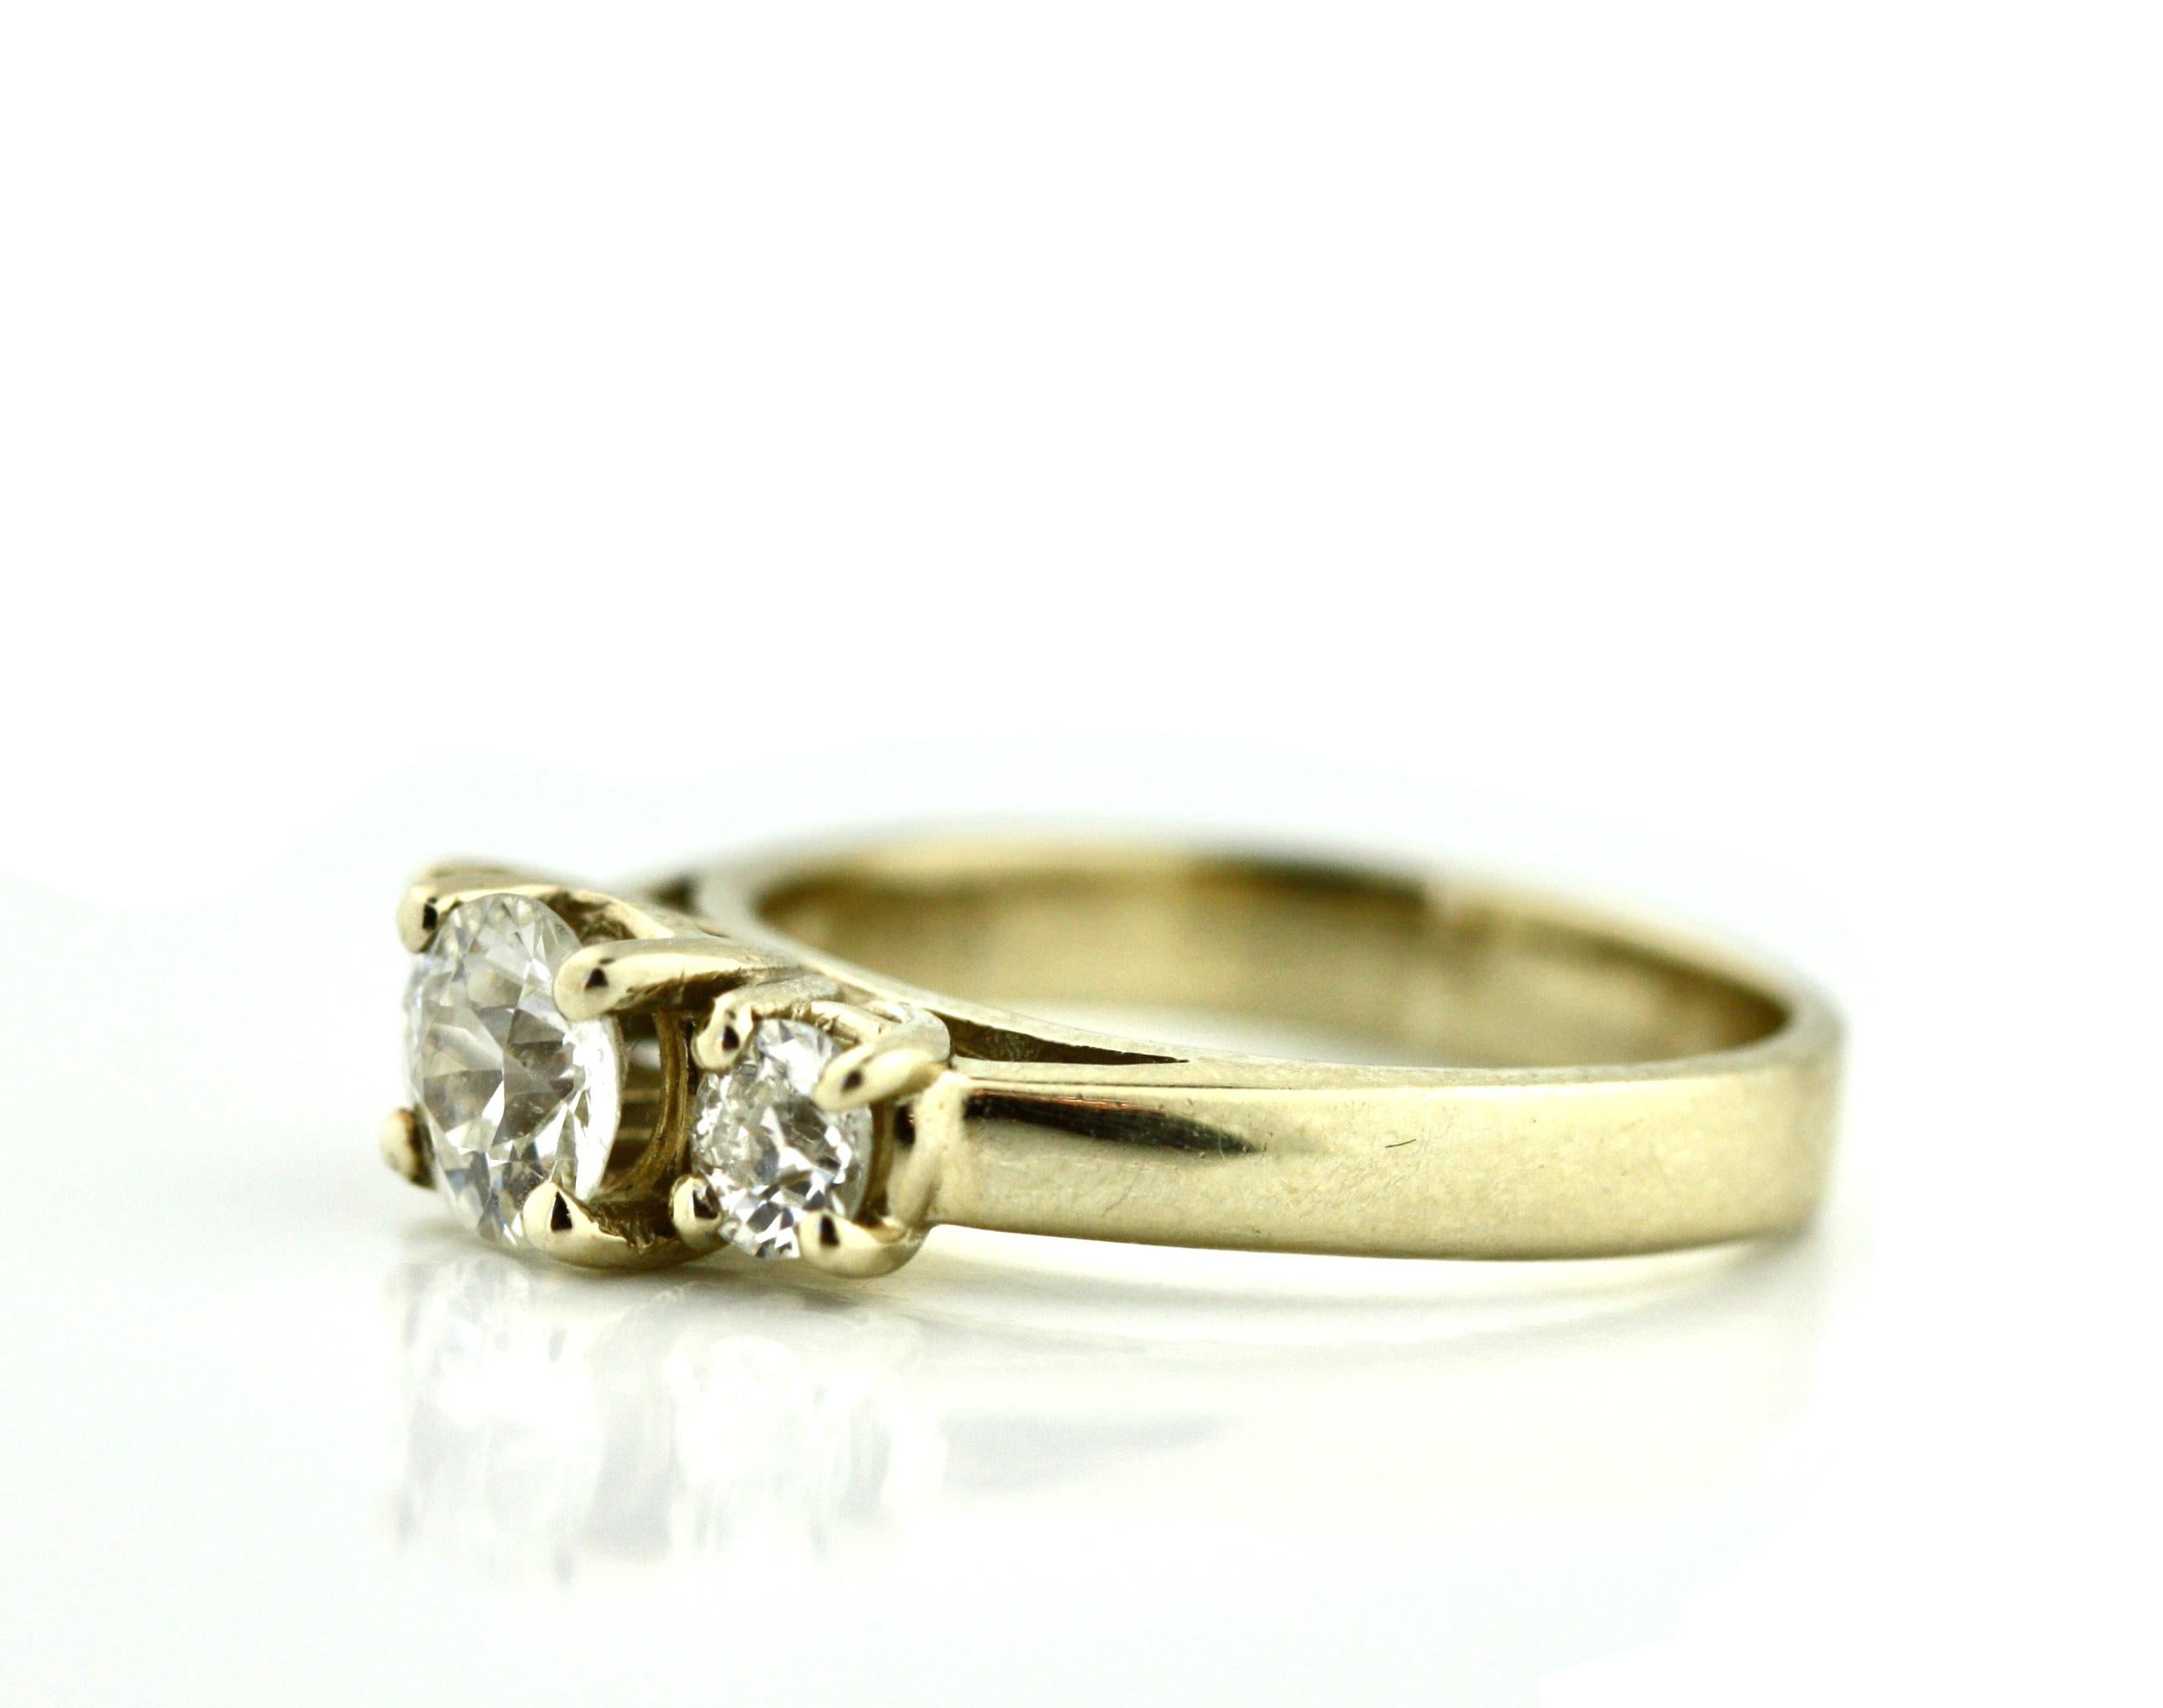 
Diamantring
In der Mitte ein Diamant im Rundschliff mit einem Gewicht von ca. 0,67 Karat, flankiert von zwei Diamanten im Rundschliff mit einem Gewicht von ca. 0,39 Karat, montiert in 18 Karat Weißgold, Bruttogewicht ca. 4,8 Gramm
größe 6.5